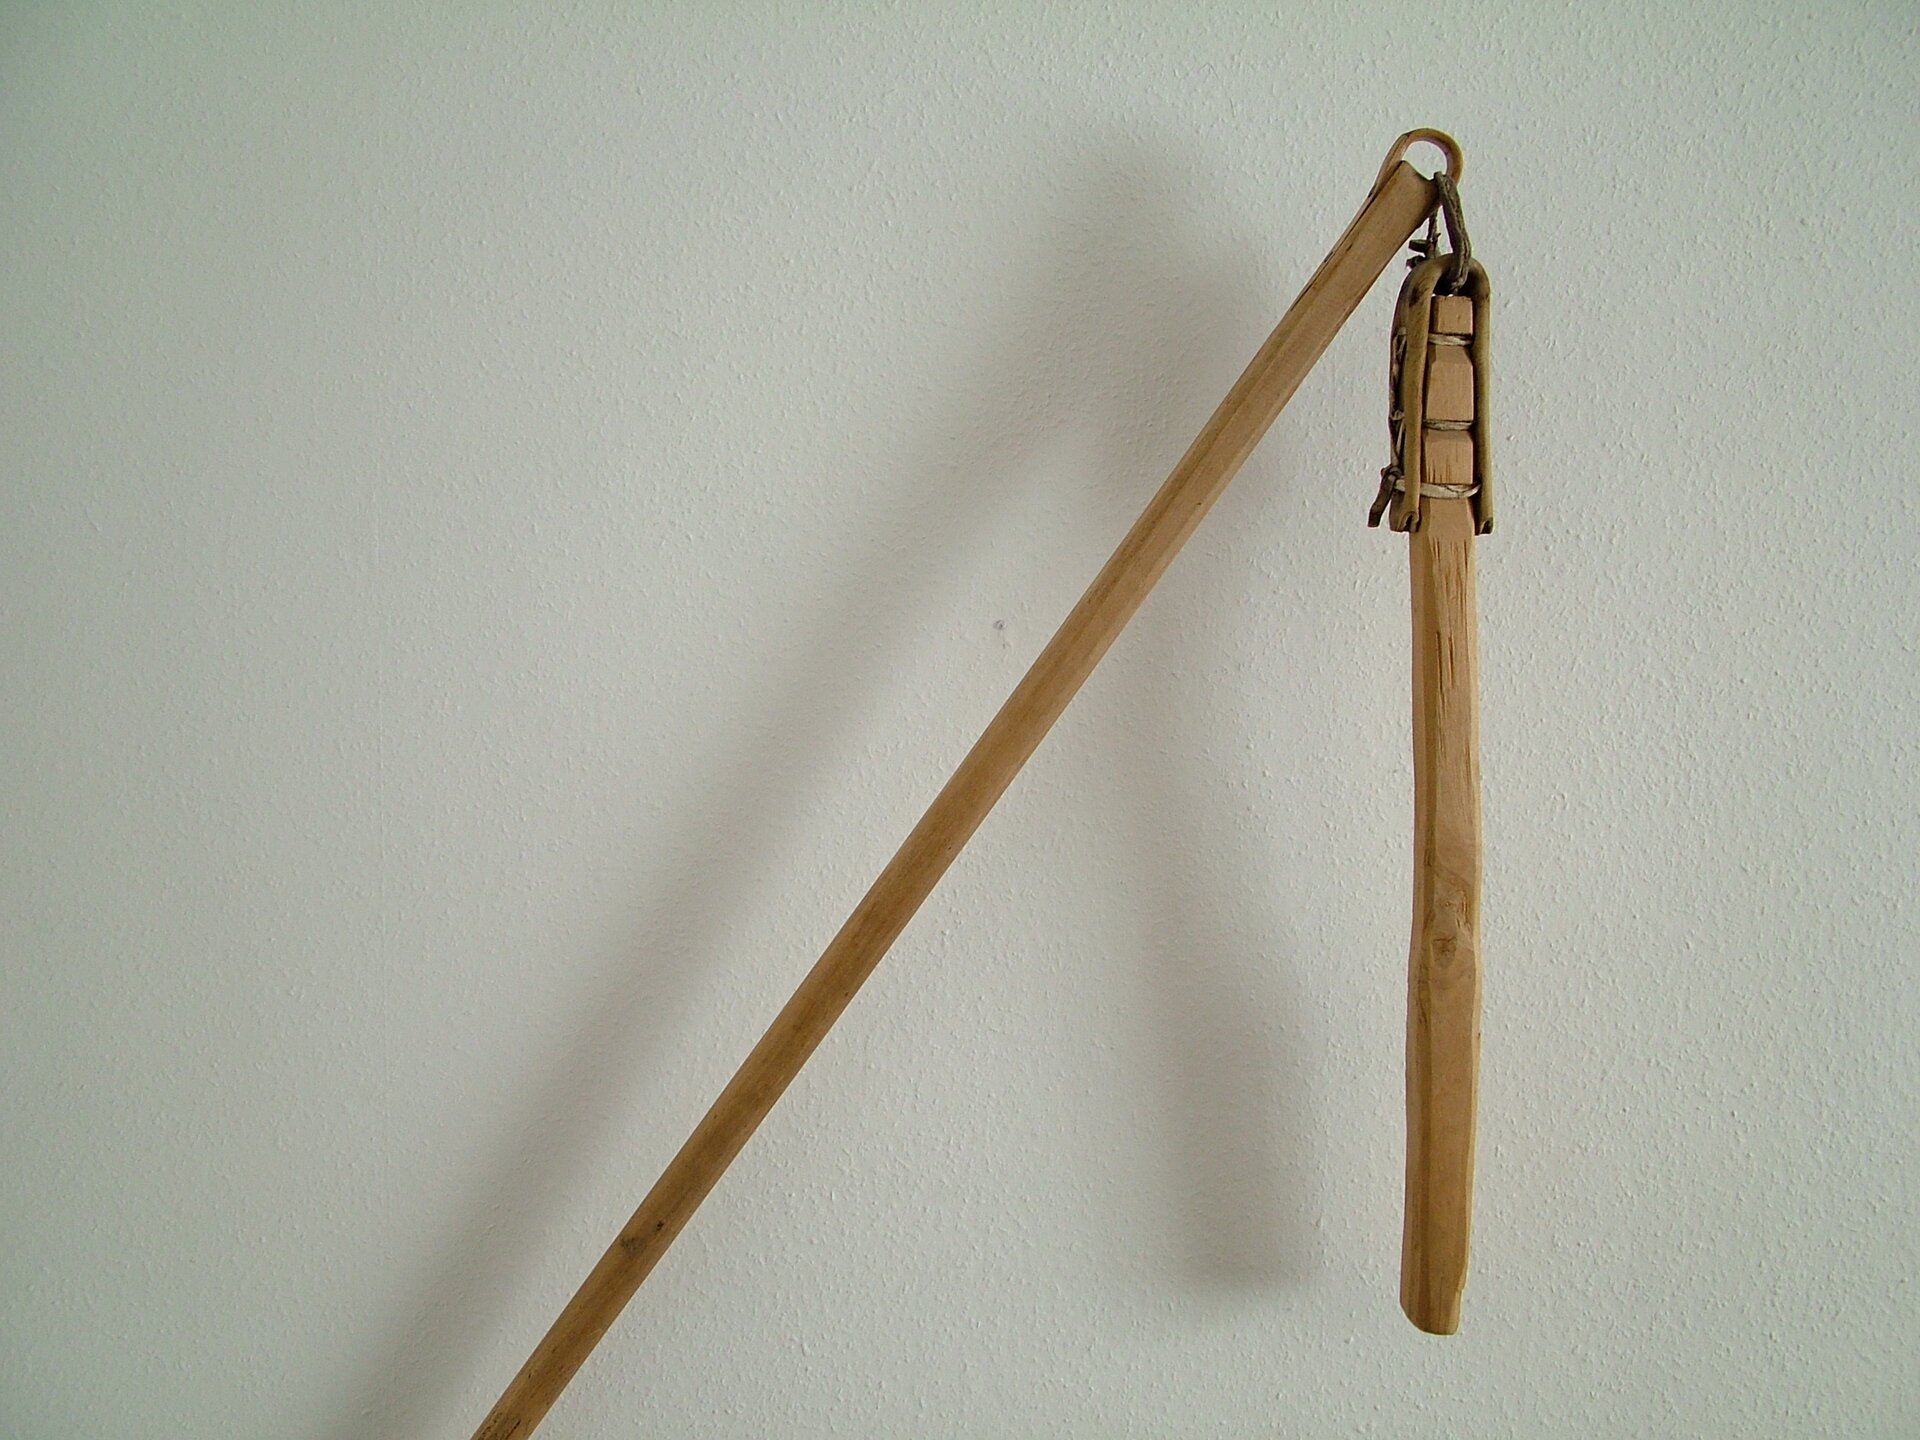 Na końcu długiej tyczki sznurkiem i rzemieniem przyczepiony jest krótszy drąg.